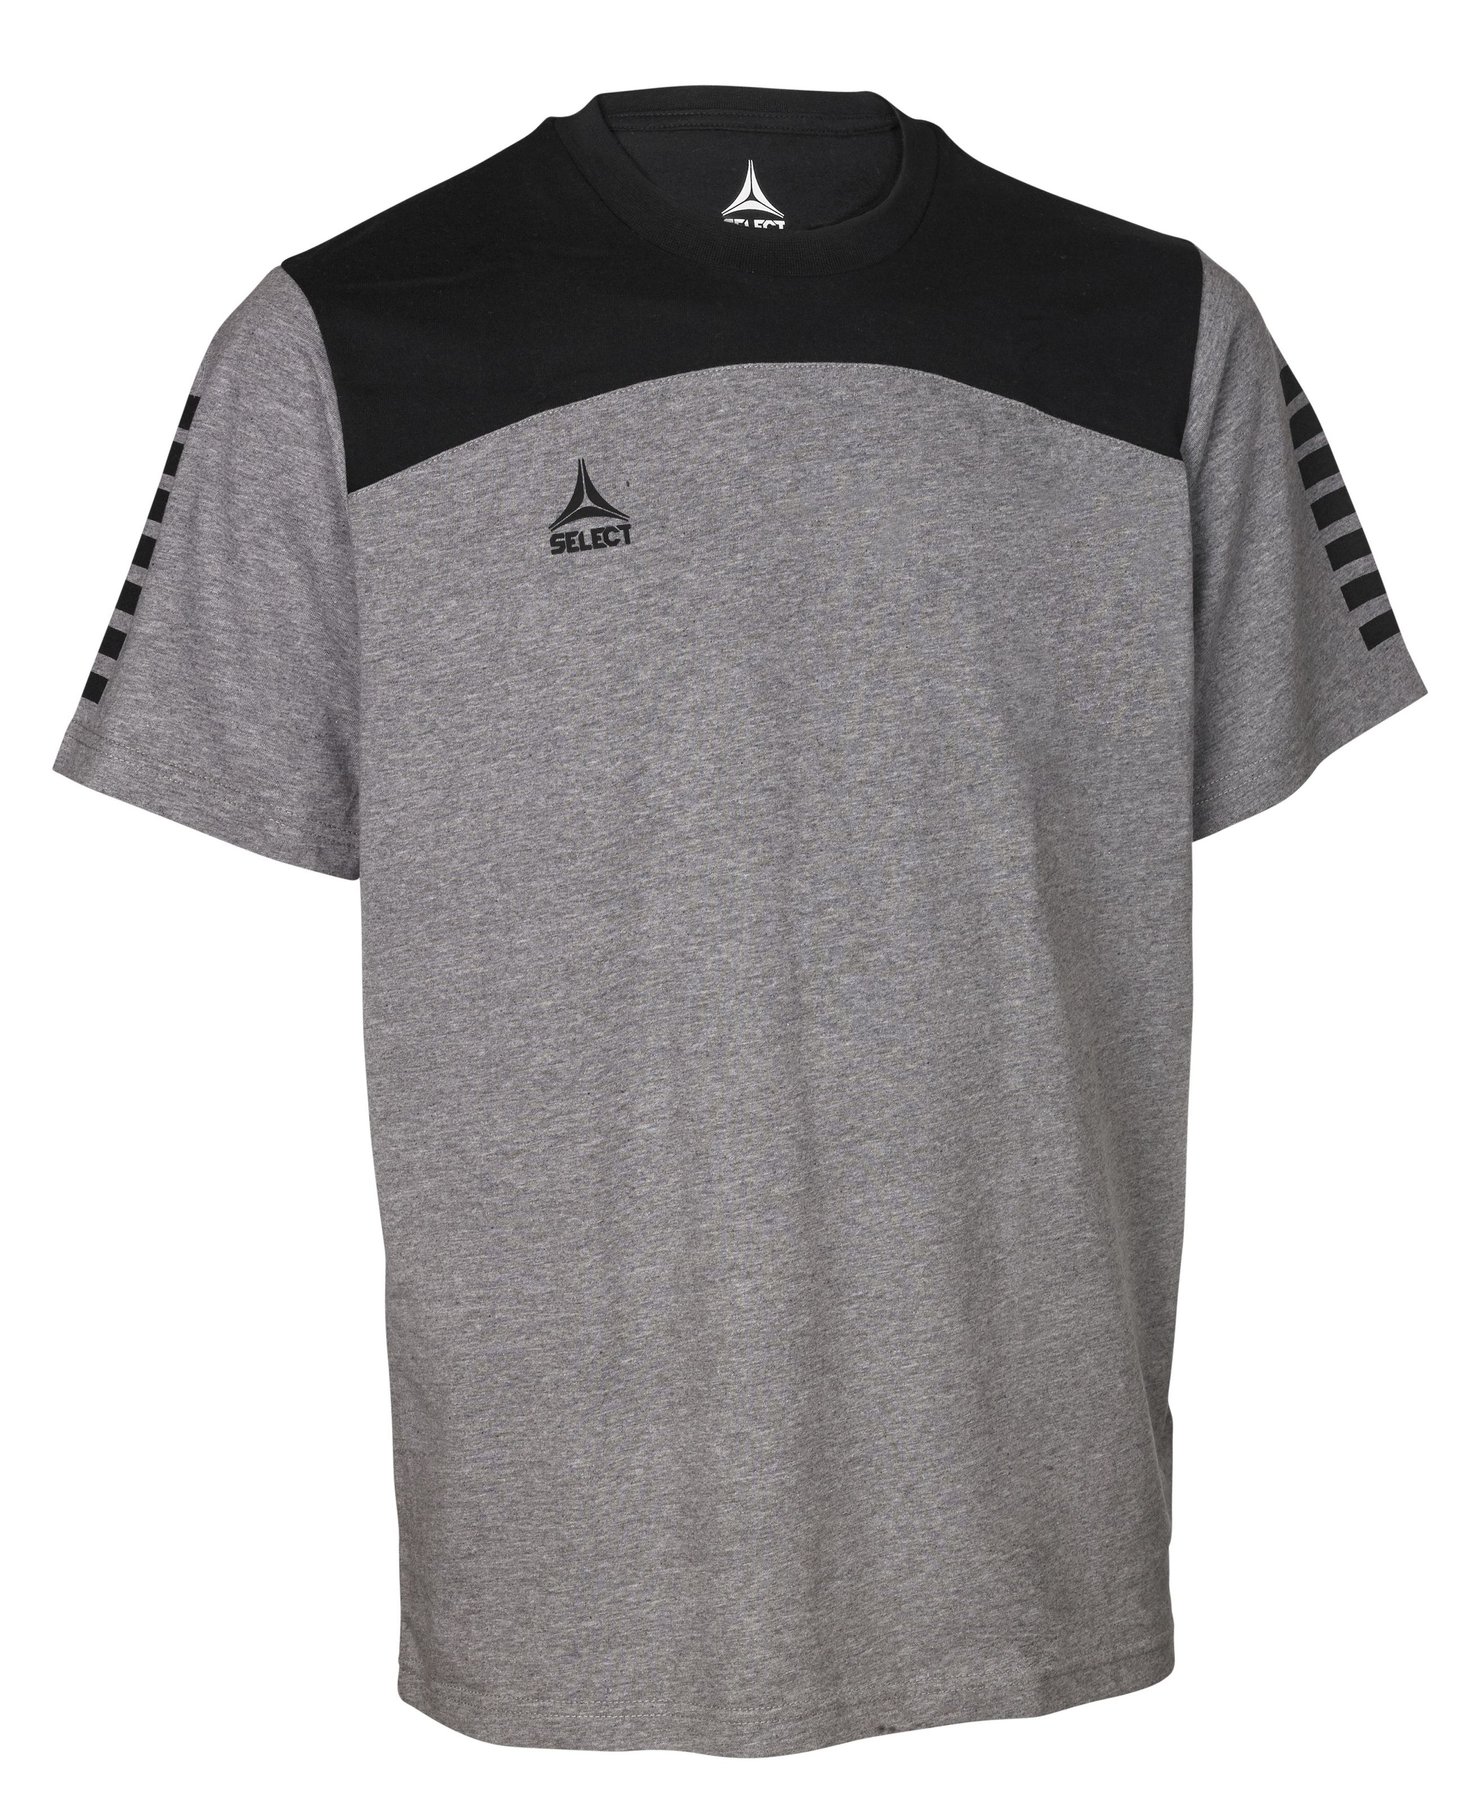 Футболка SELECT Oxford t-shirt (968) сіро/чорн, 6 років